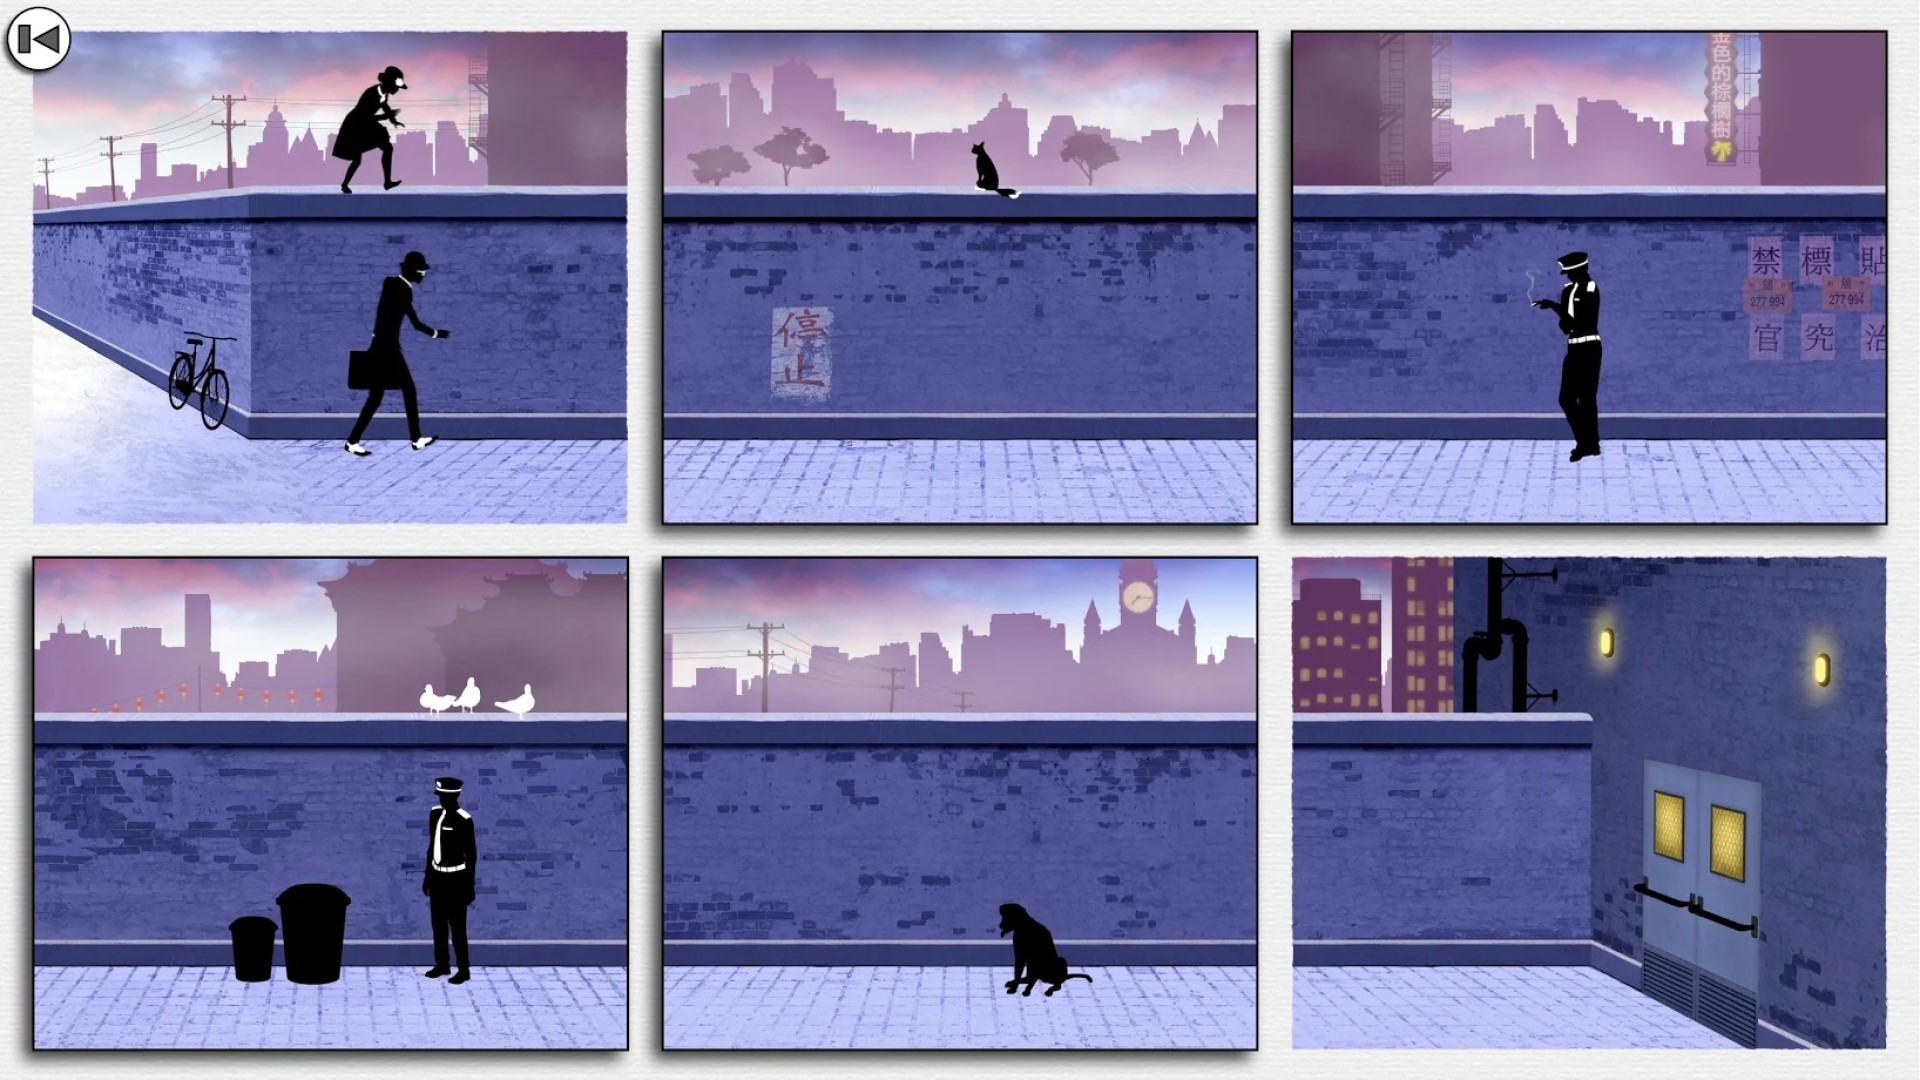 Najlepšie hry pre mobilné puzzle: zarámované 2. Obrázok zobrazuje rôzne obrázky posharbených figúr visiacich okolo múrov